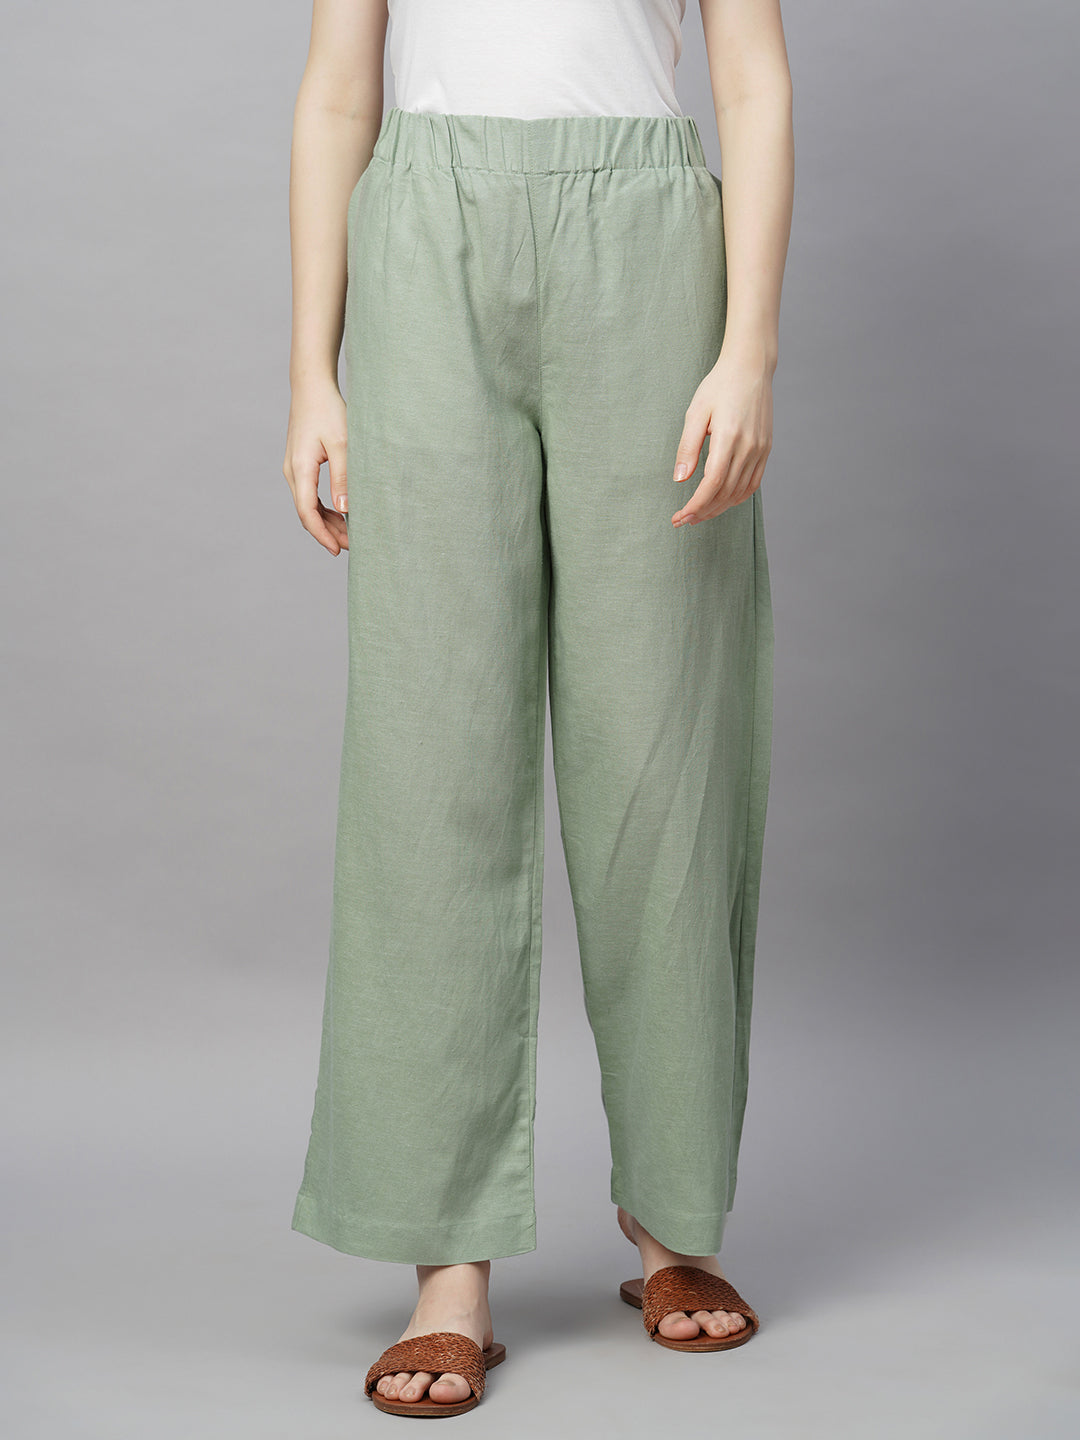 Women's Viscose Linen Cotton Green Wide Leg Pant